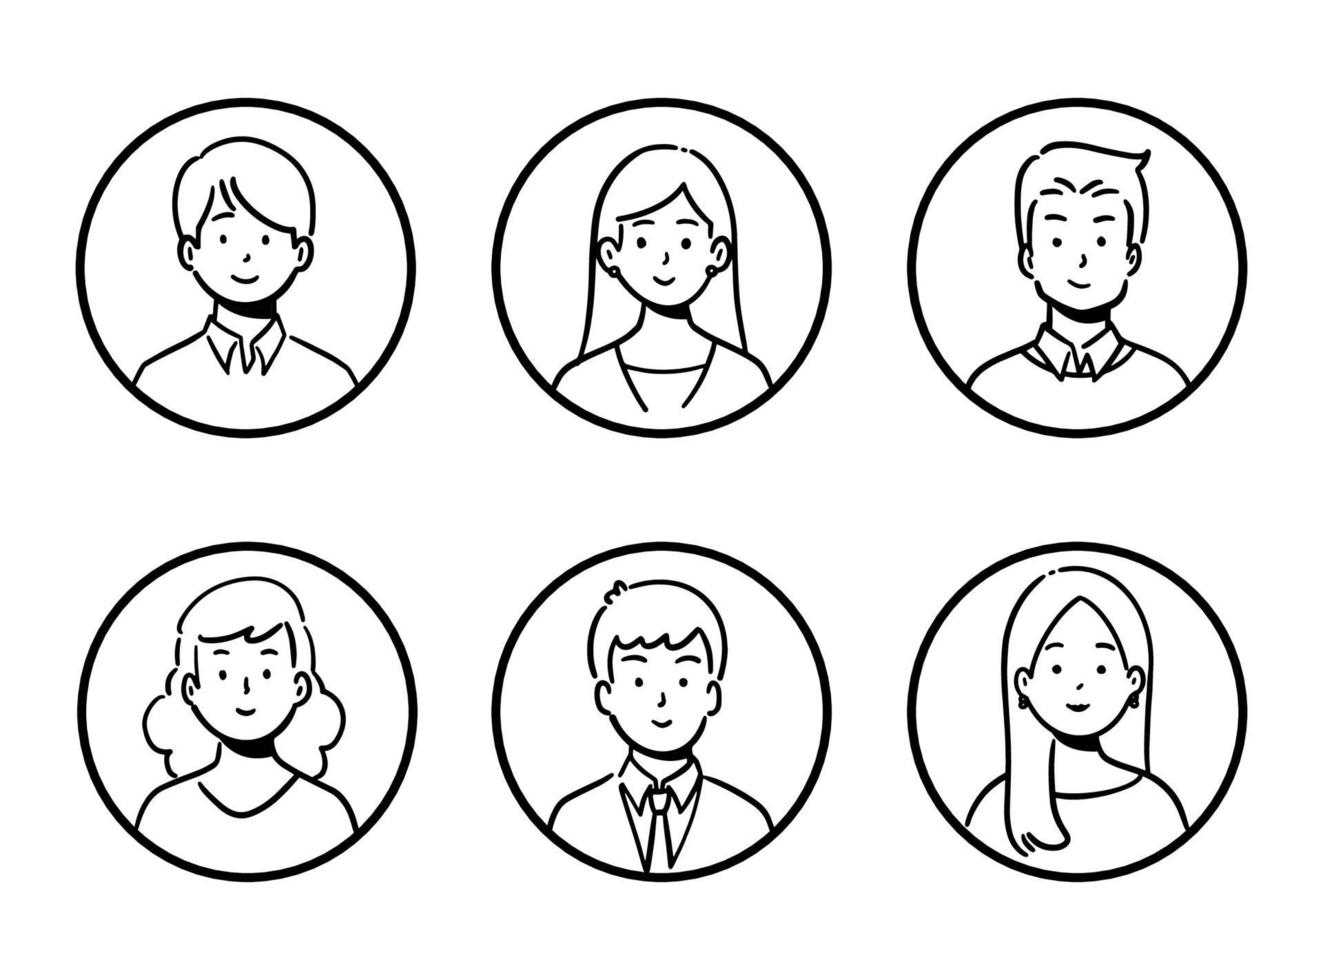 Doodle conjunto de trabajadores de oficina de avatar, gente alegre, estilo de icono dibujado a mano, diseño de personajes, ilustración vectorial. vector